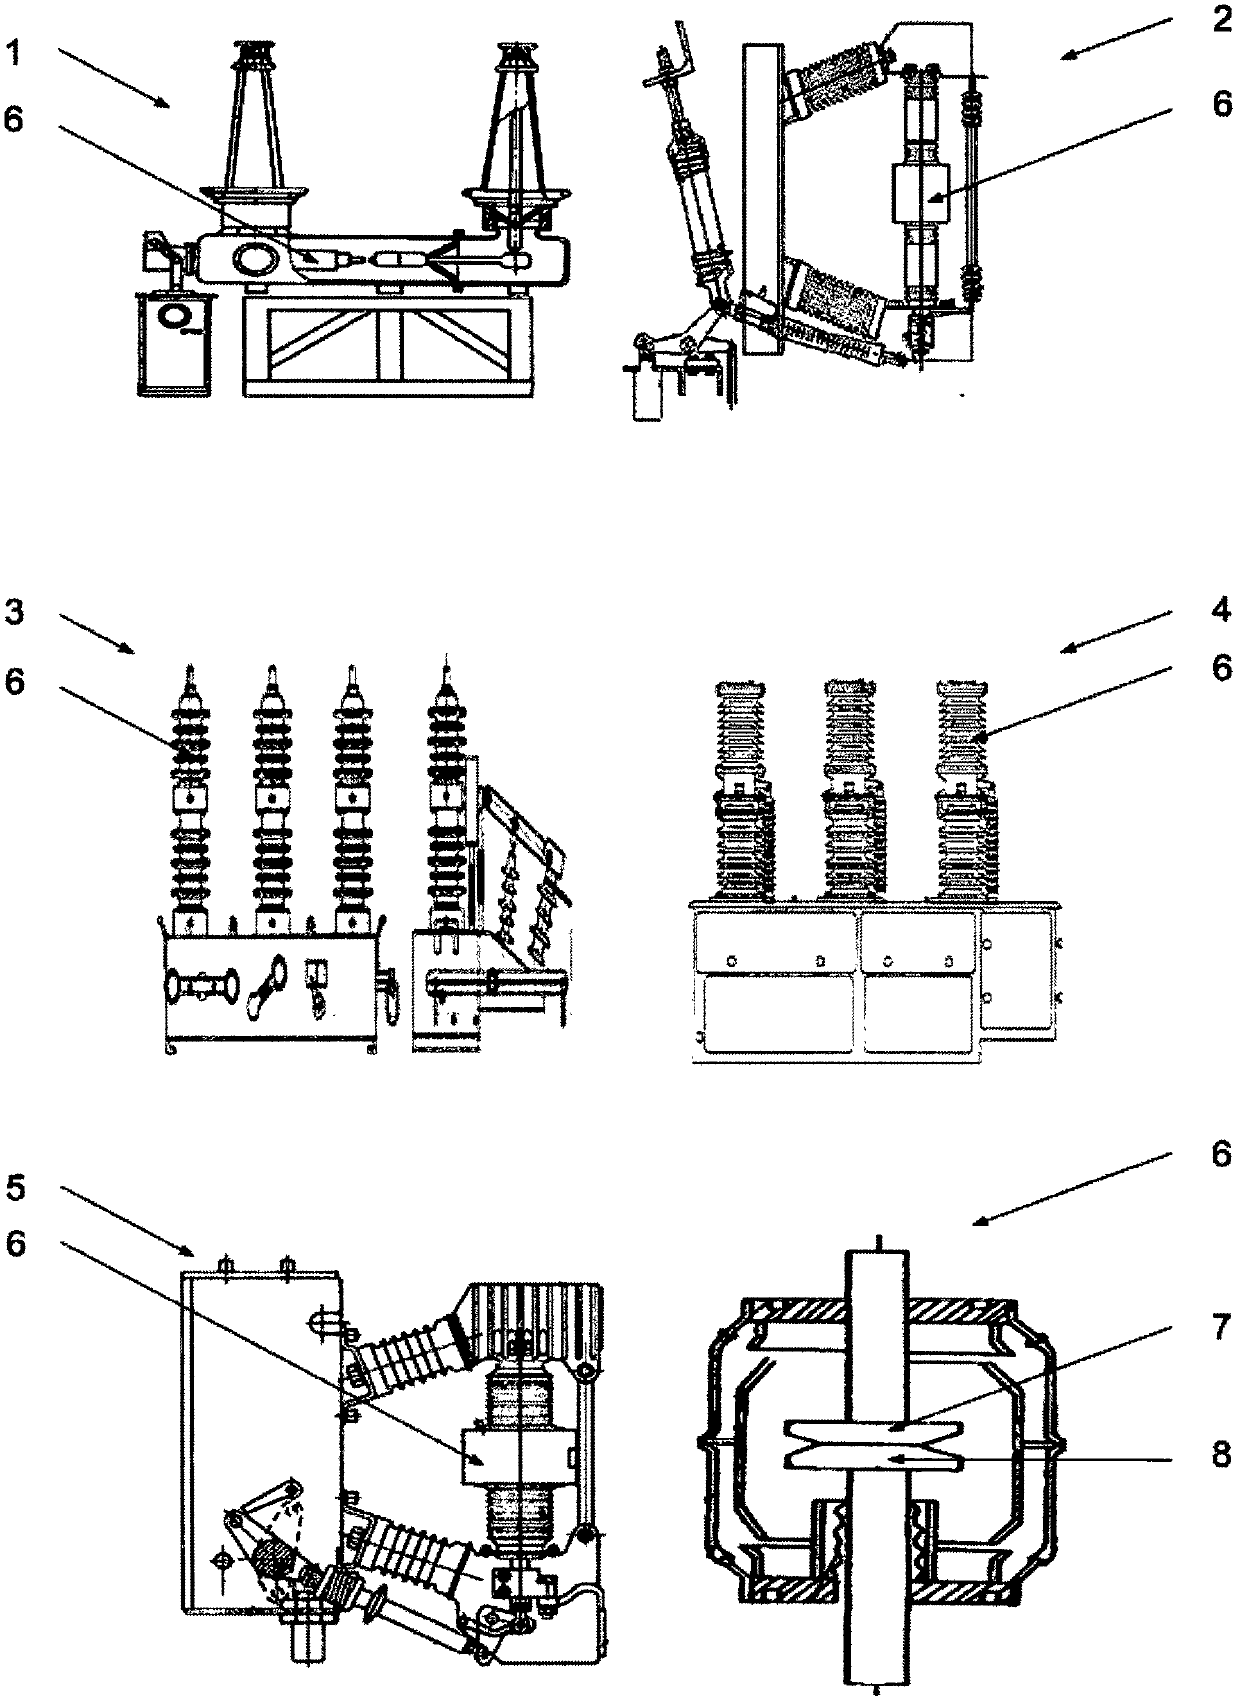 Main circuit breaking method of circuit breaker and soft starting circuit breaker